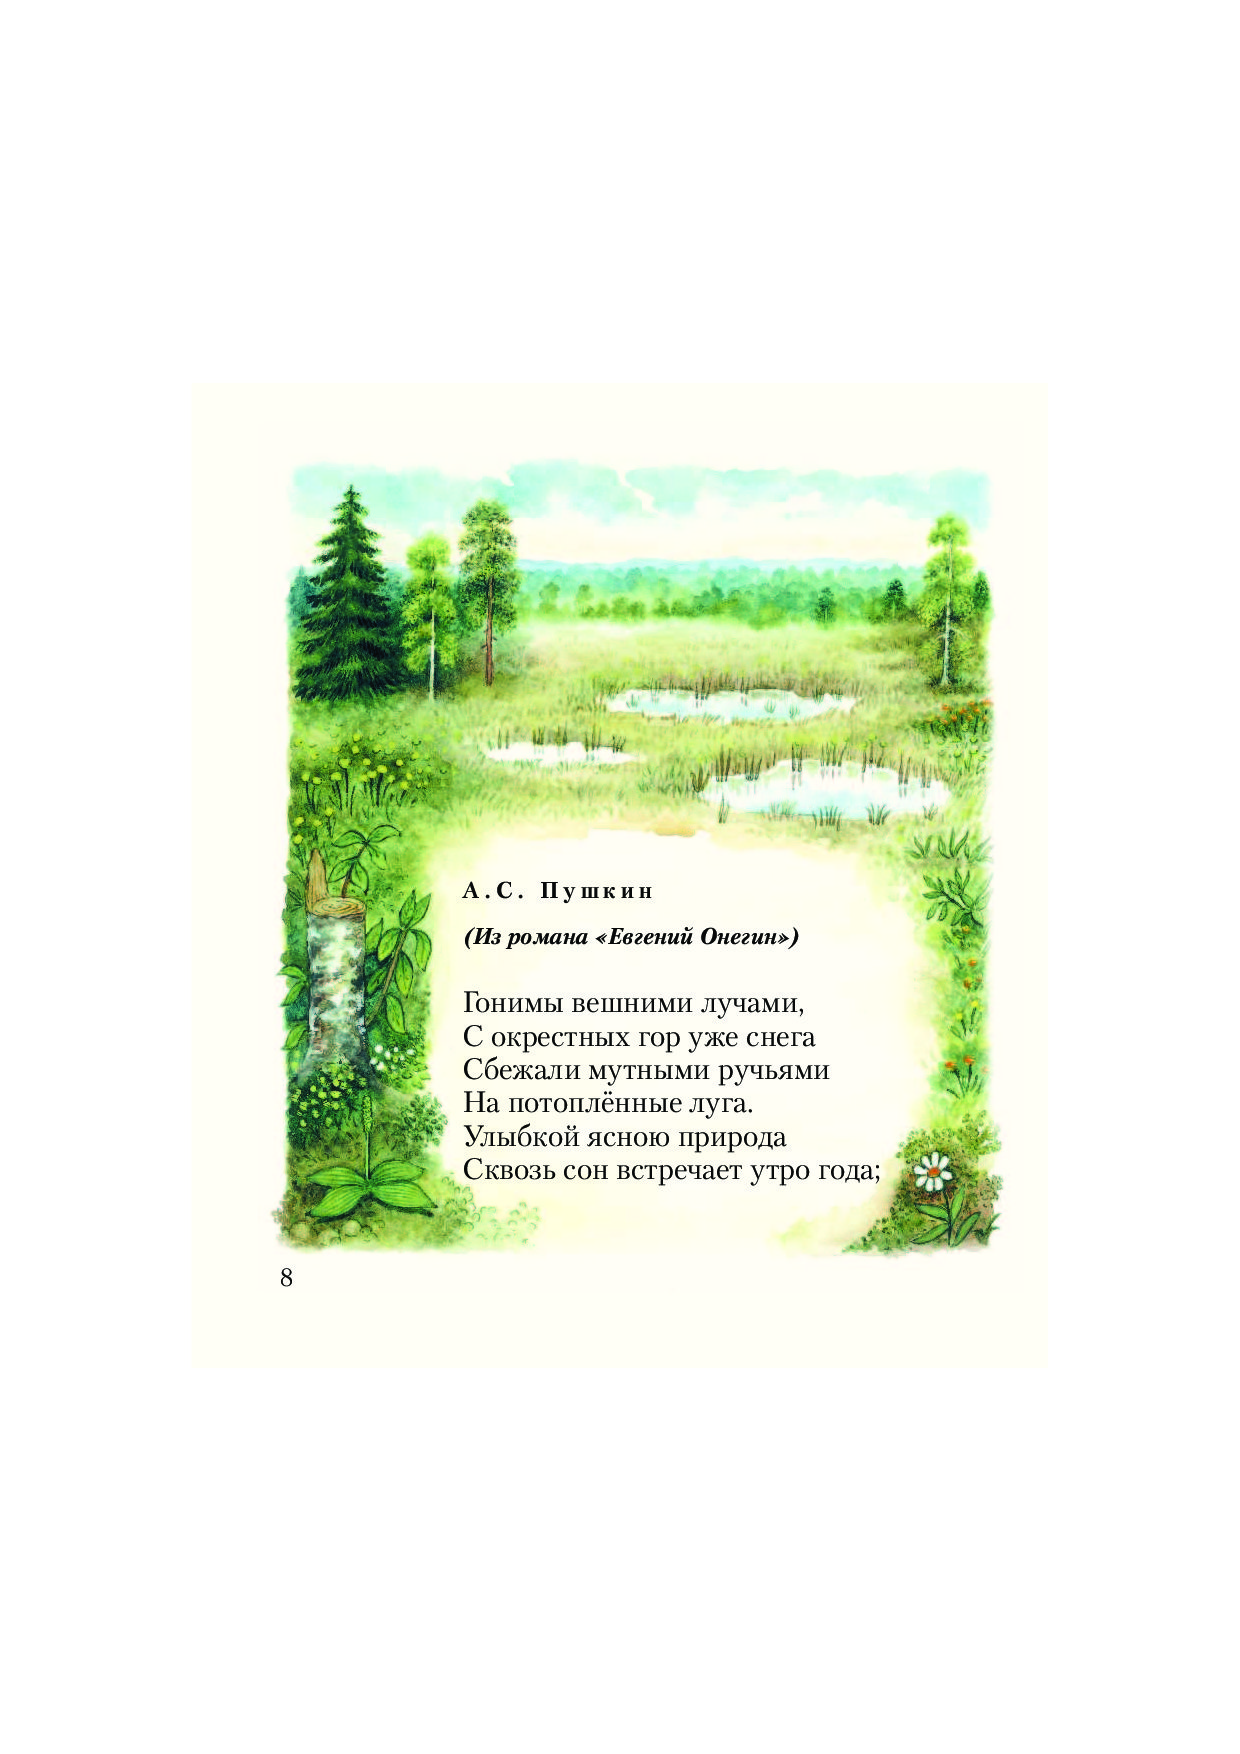 Стихи пушкина о природе для детей